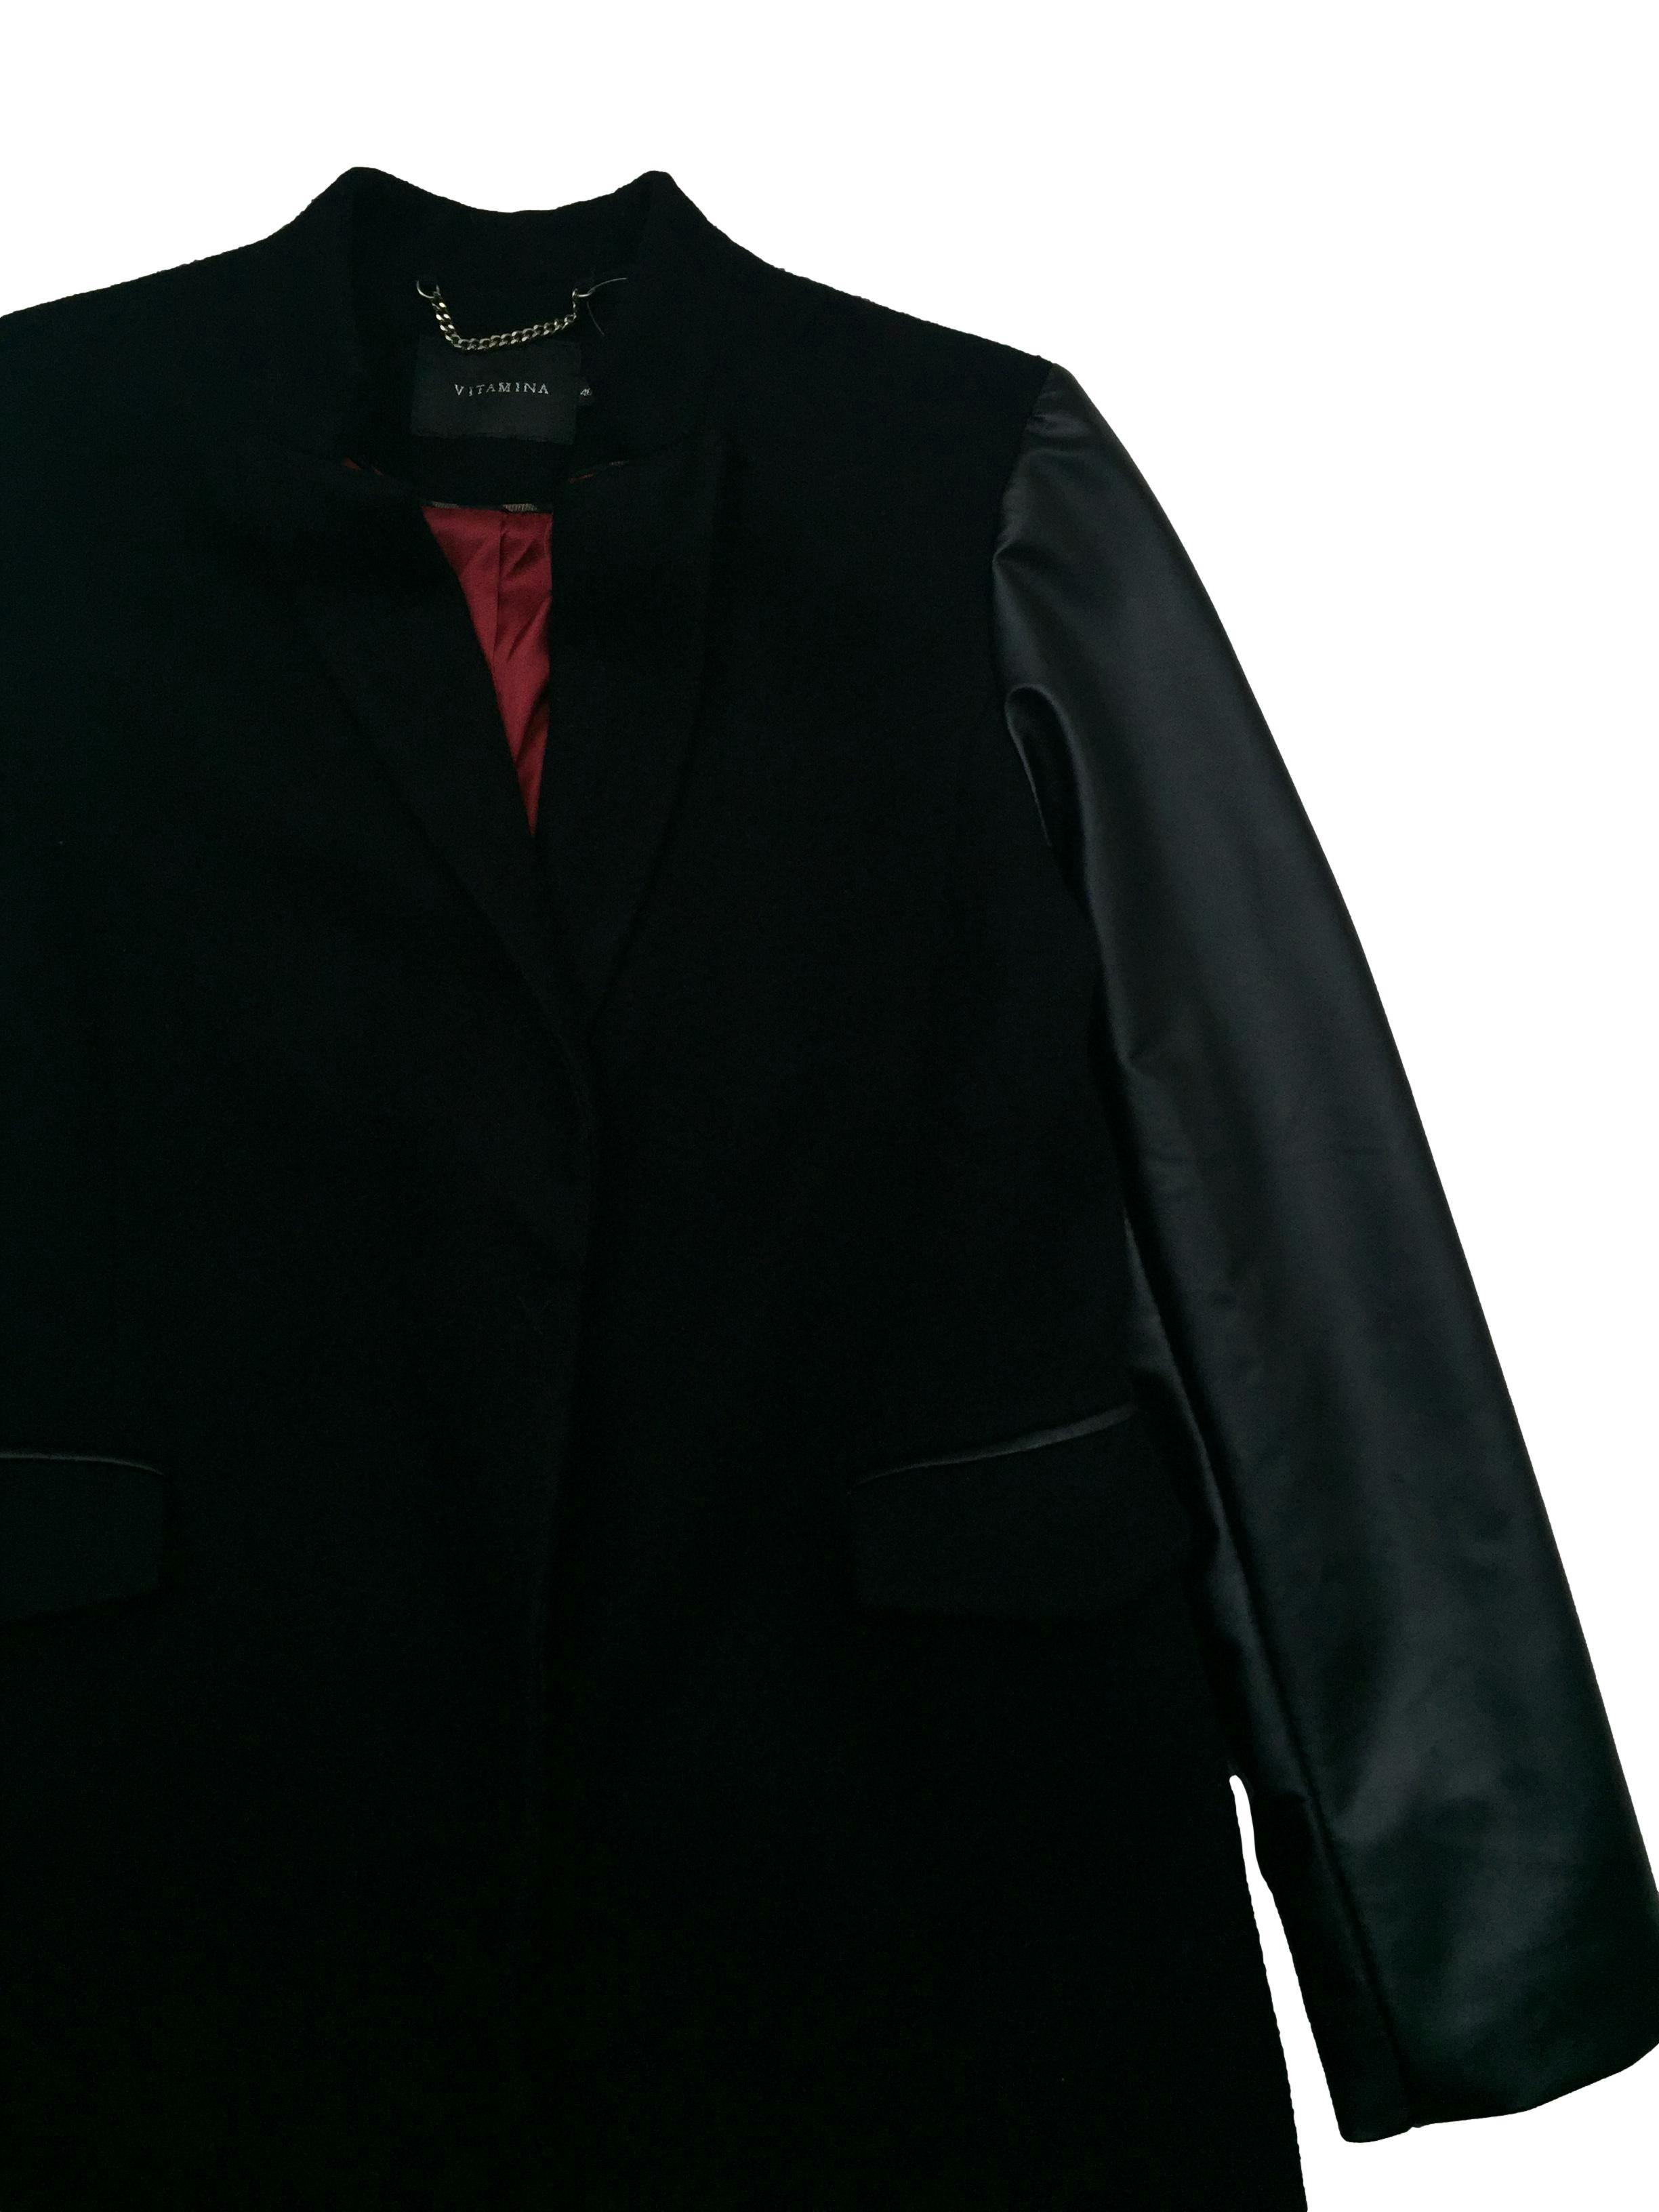 Abrigo Vitamina negro mezcla de lana y cashmere, forrado, mangas de cuerina. Busto 100 Largo 88cm